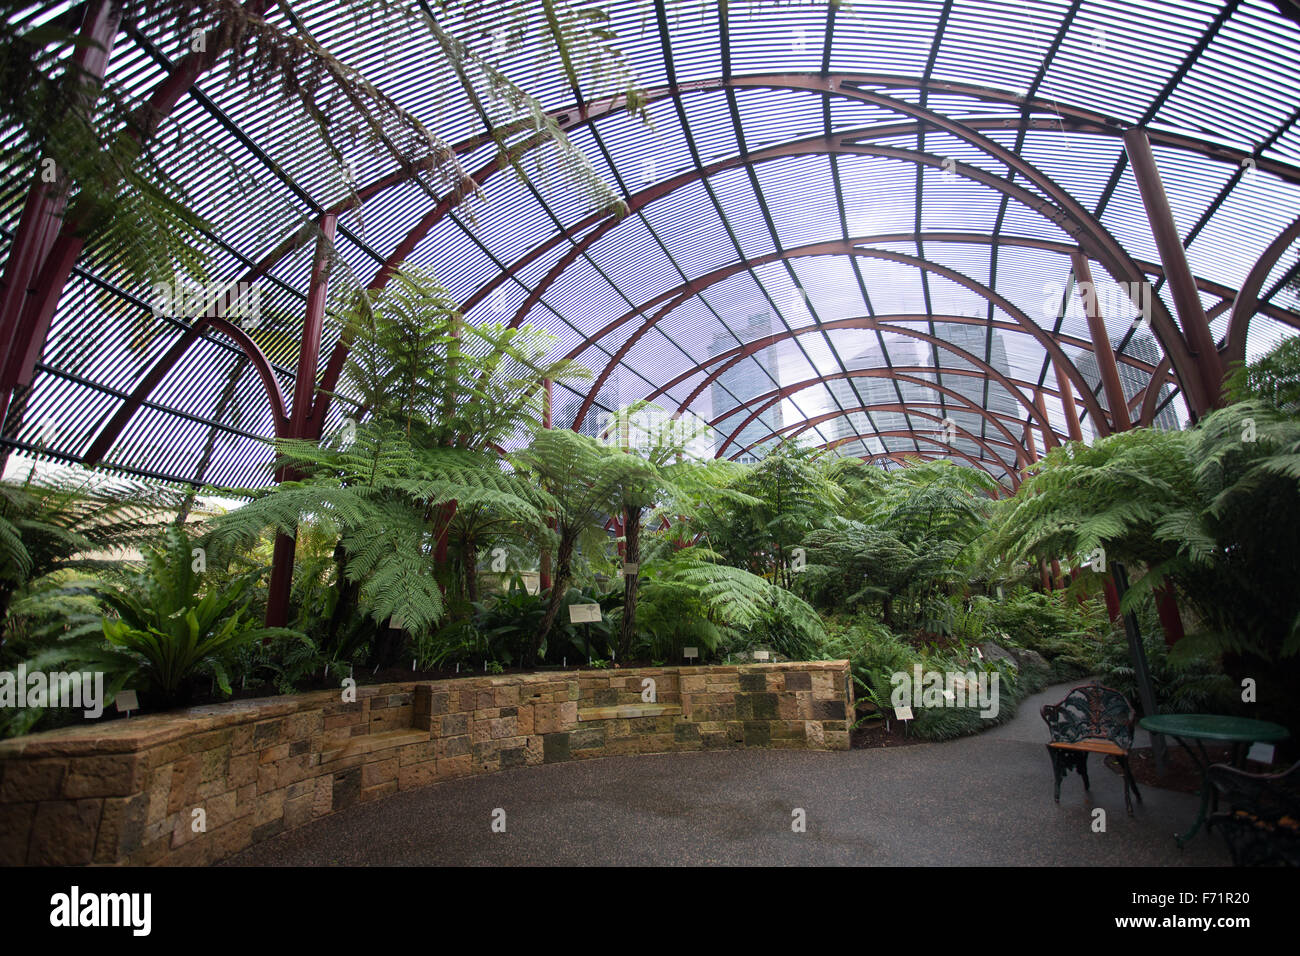 Sydney Royal Botanic Gardens Stock Photo